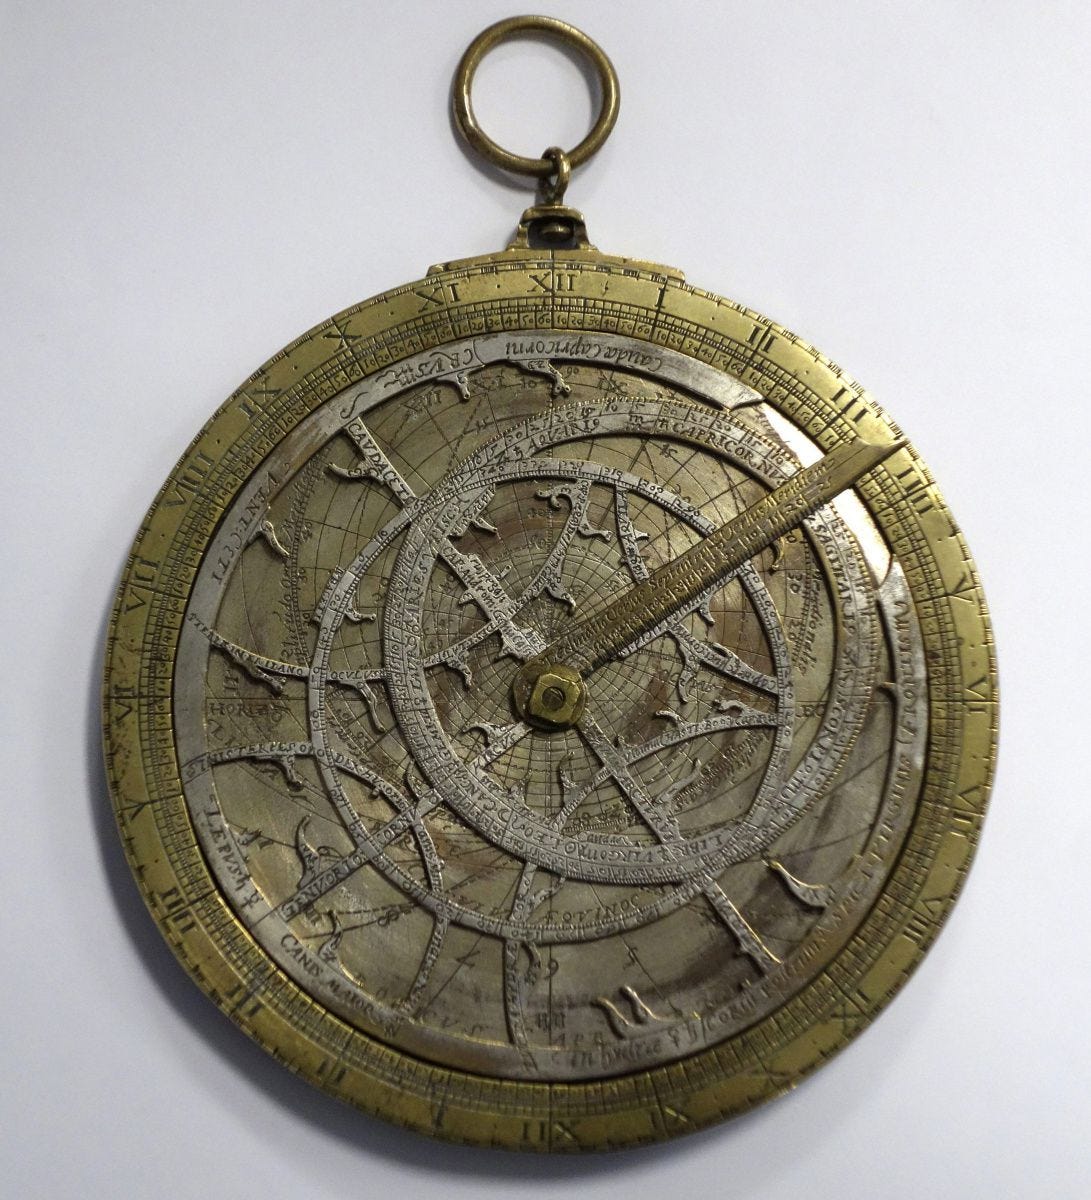 Um Astrolábio com cerca de 400 anos, ele possui diversos discos feitos de diferentes materiais, com inscrições ao longo de toda a circunferência, há uma agulha móvel no centro.